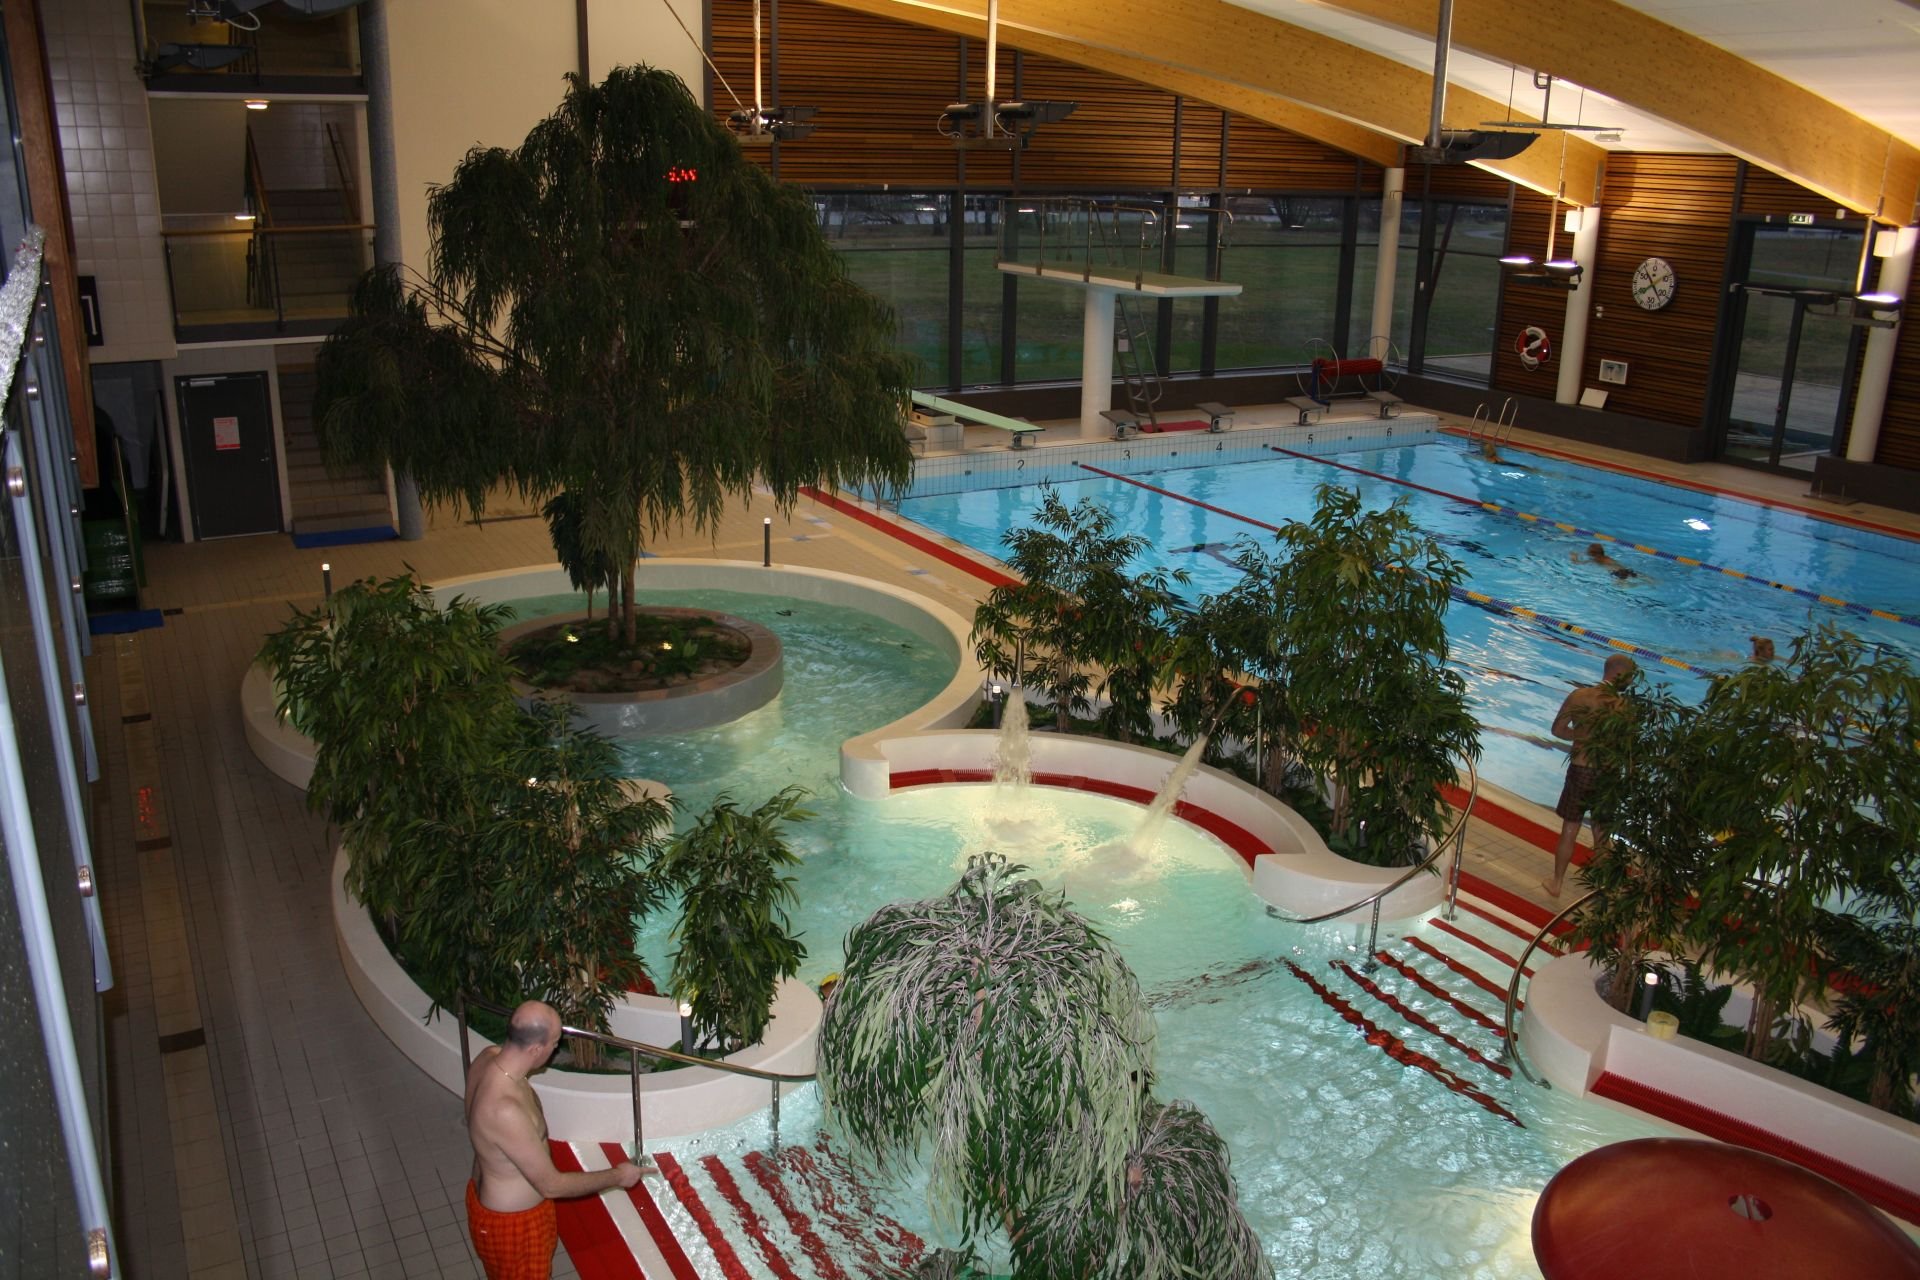 Sannabadet - indoor pool